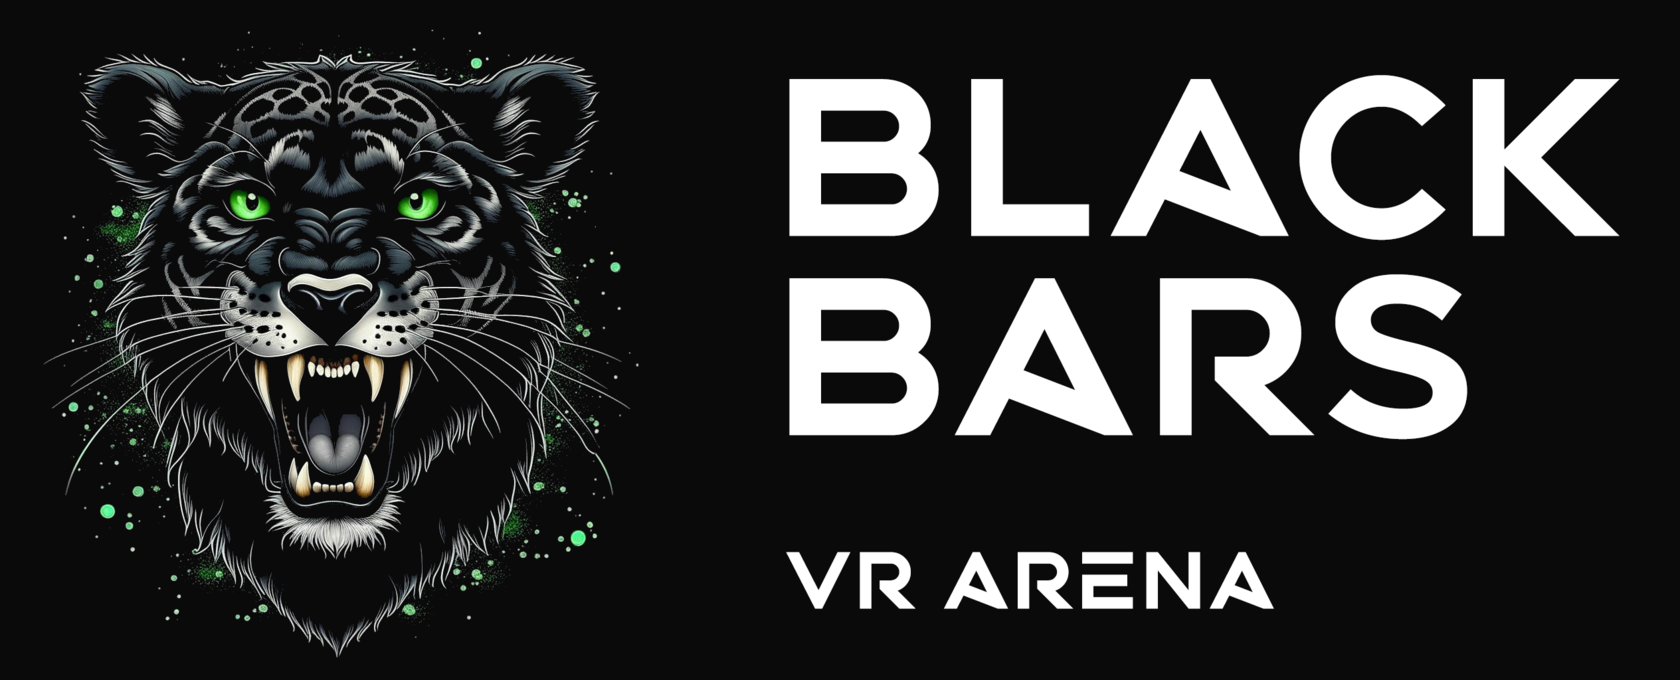  BLACK BARS | VR ARENA 